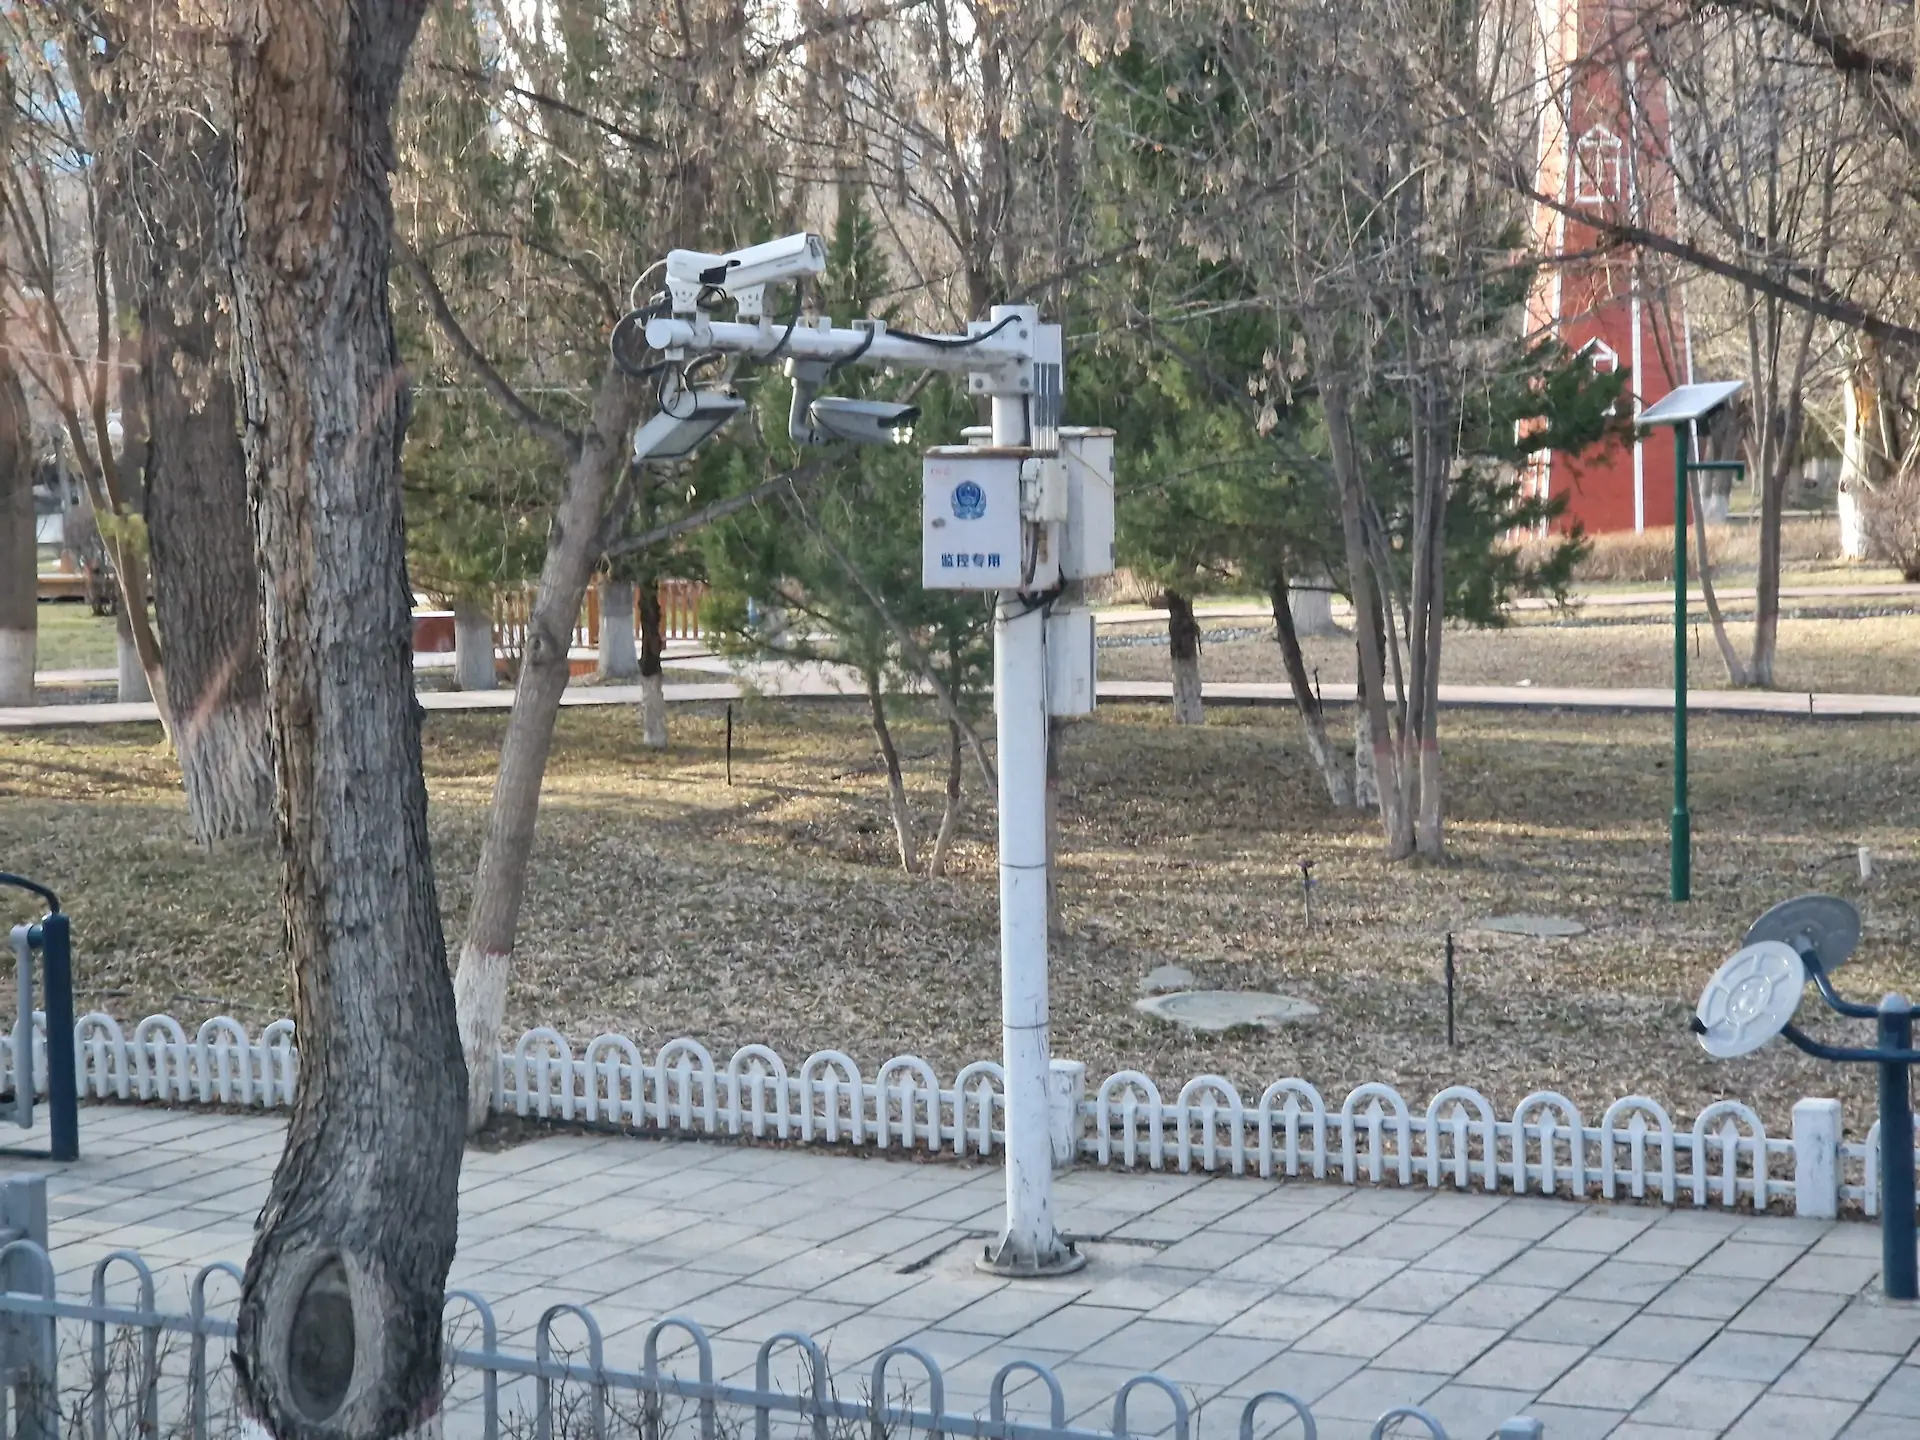 Sur un trottoir, quatre caméras se trouvent au sommet d'un poteau.